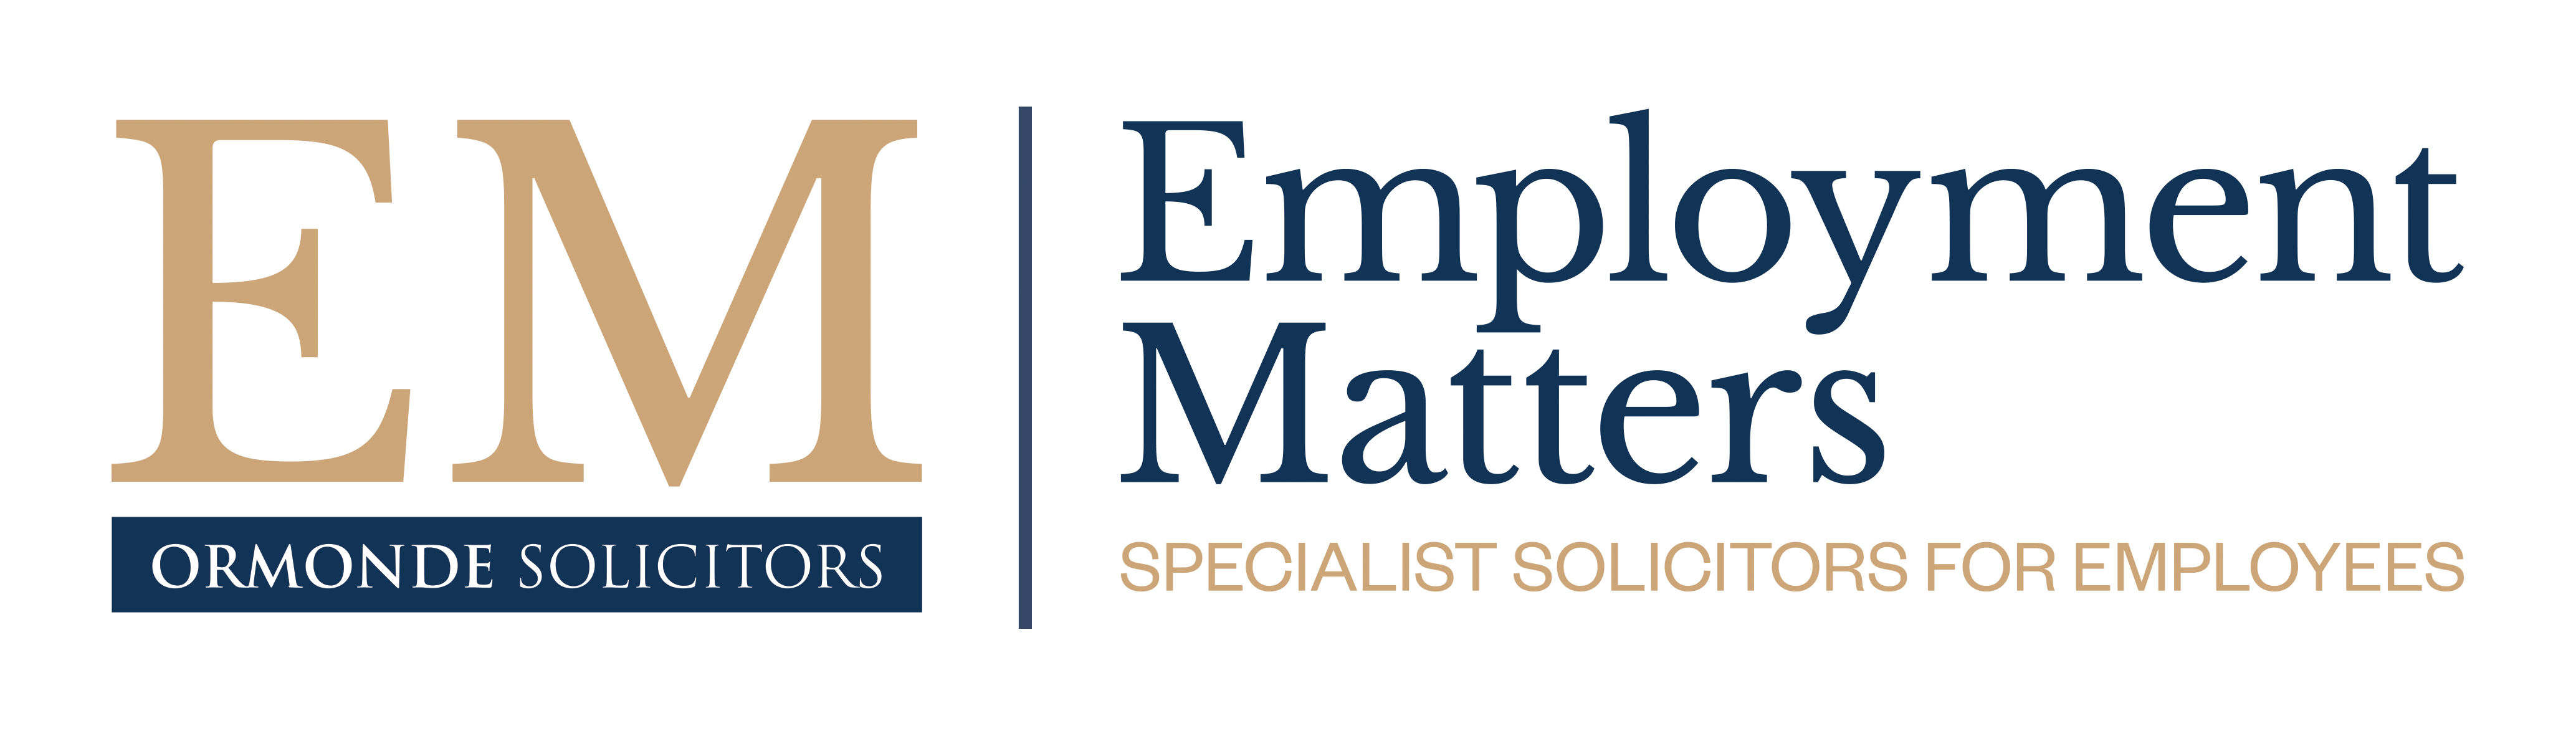 employment matters